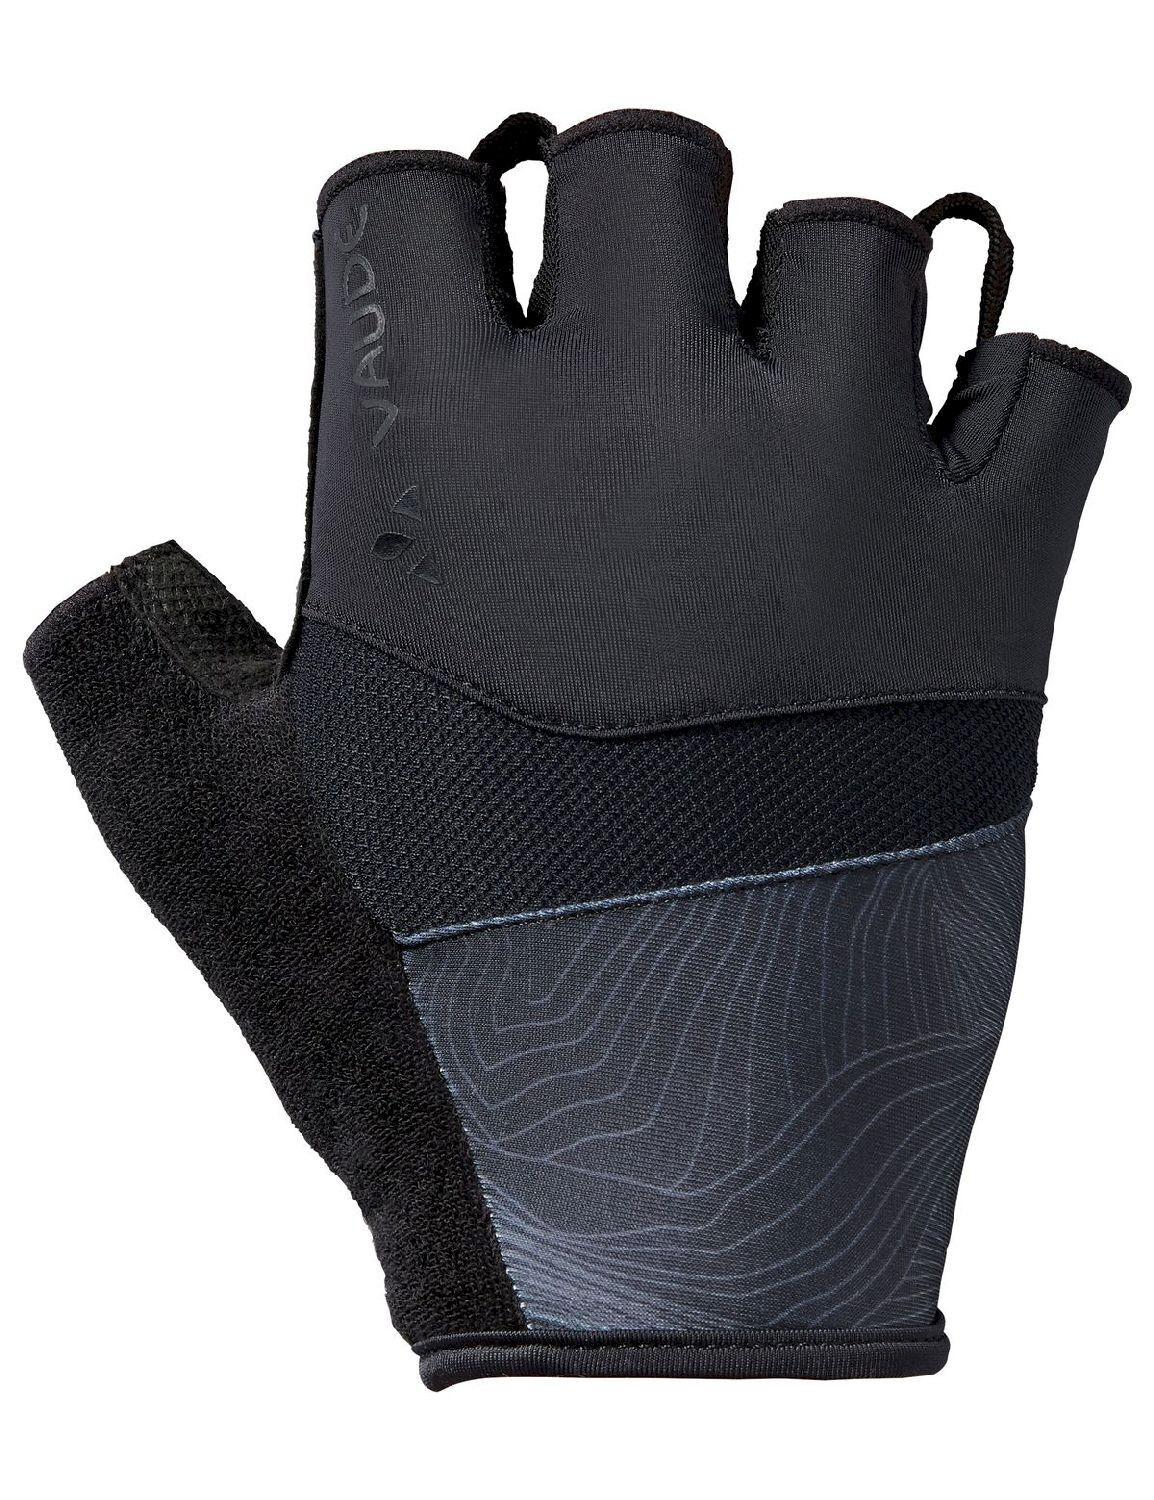 Vaude Advanced Gloves II - Guantes ciclismo - Hombre